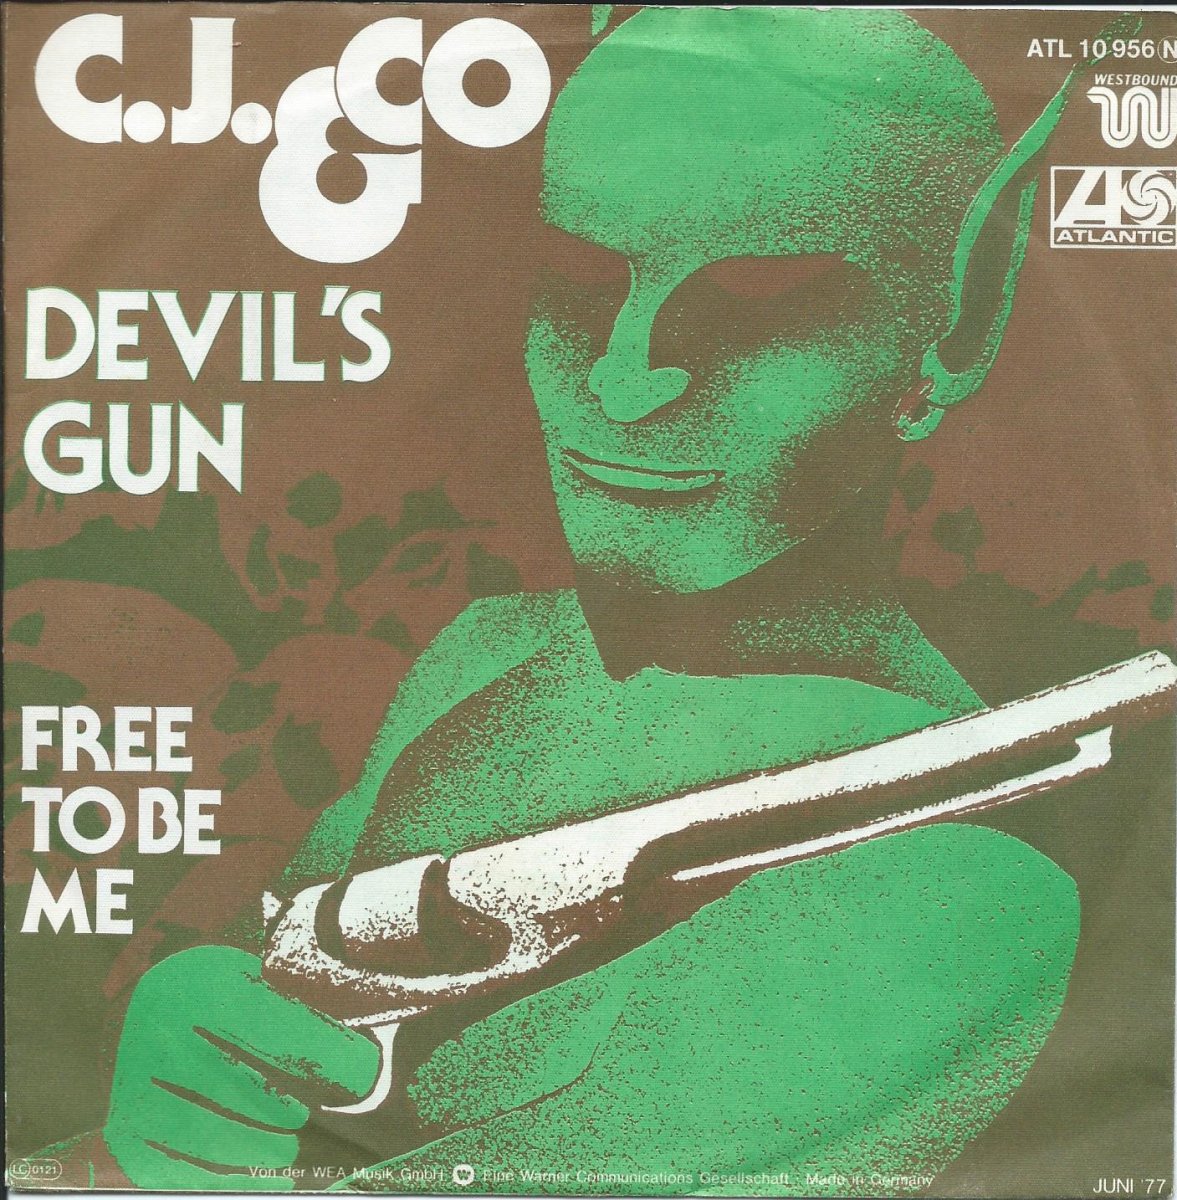 C.J. & CO. / DEVIL'S GUN / FREE TO BE ME (7